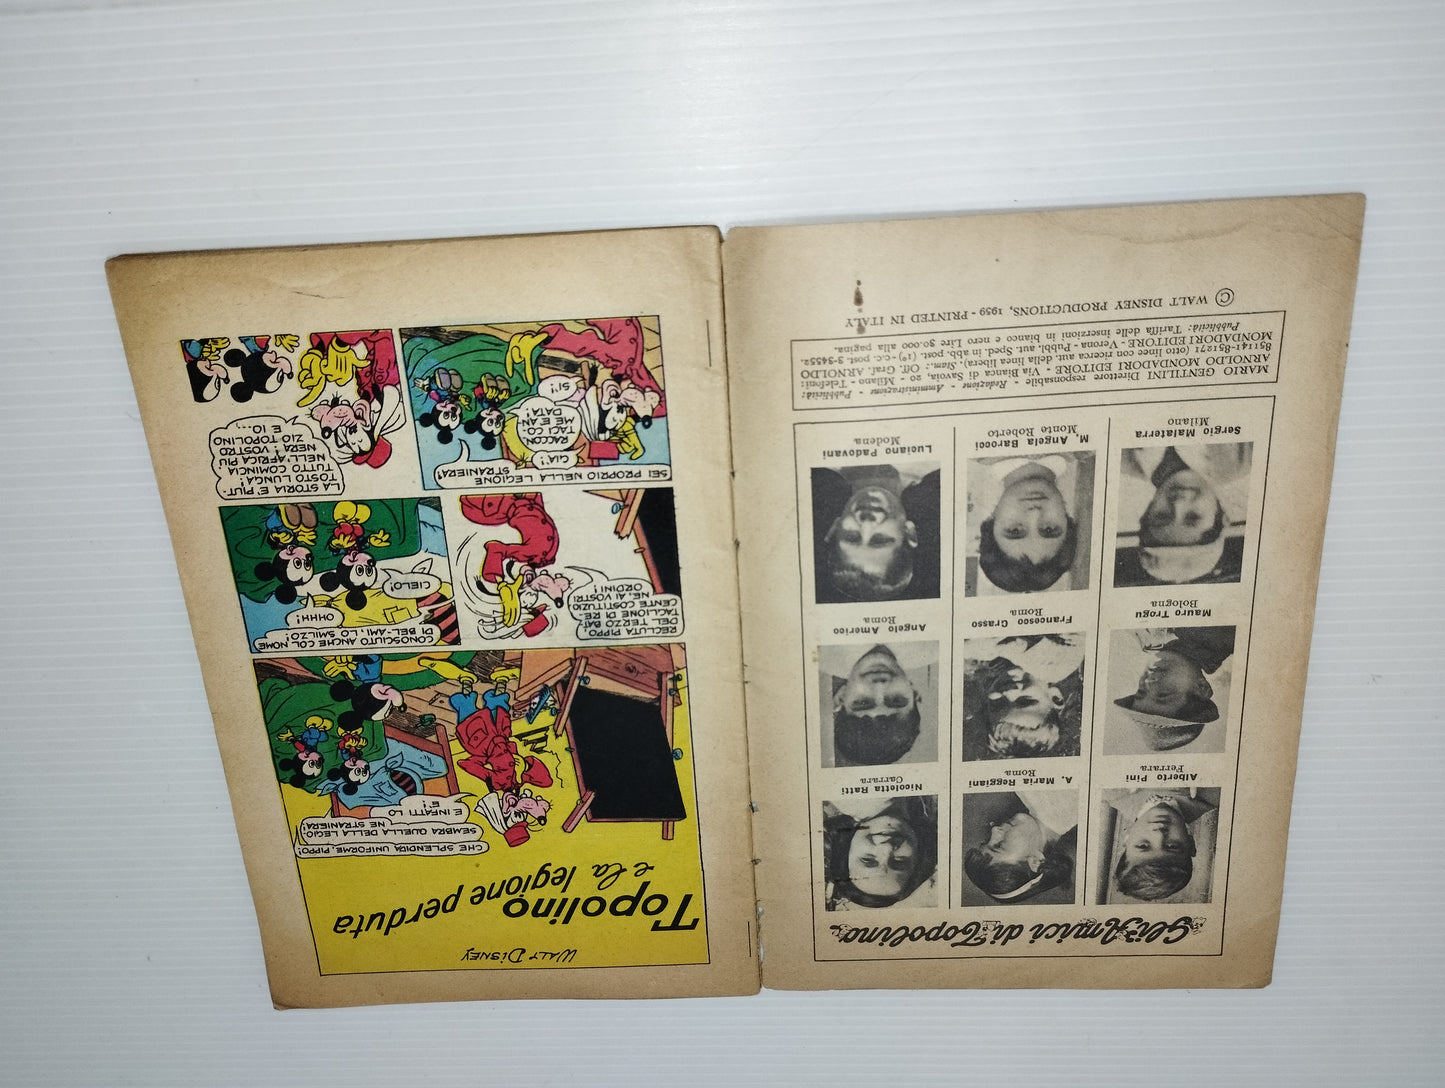 Topolino E La Legione Perduta Walt Disney Albi Della Rosa

N.218 11 gennaio 1959